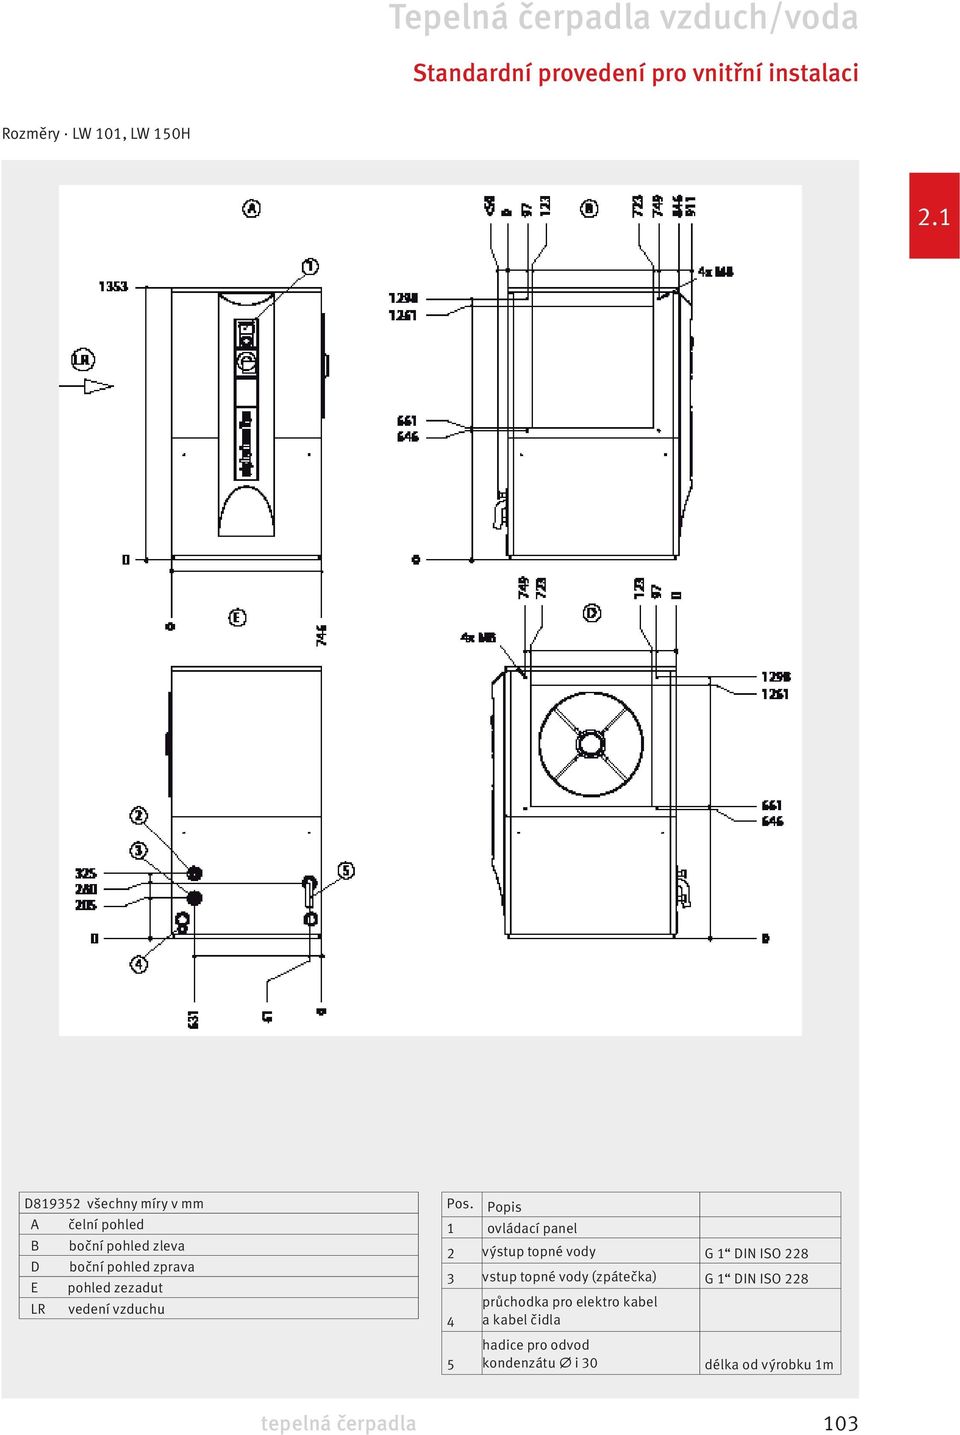 Popis 1 ovládací panel 2 výstup topné vody G 1 DIN ISO 228 3 vstup topné vody (zpátečka) G